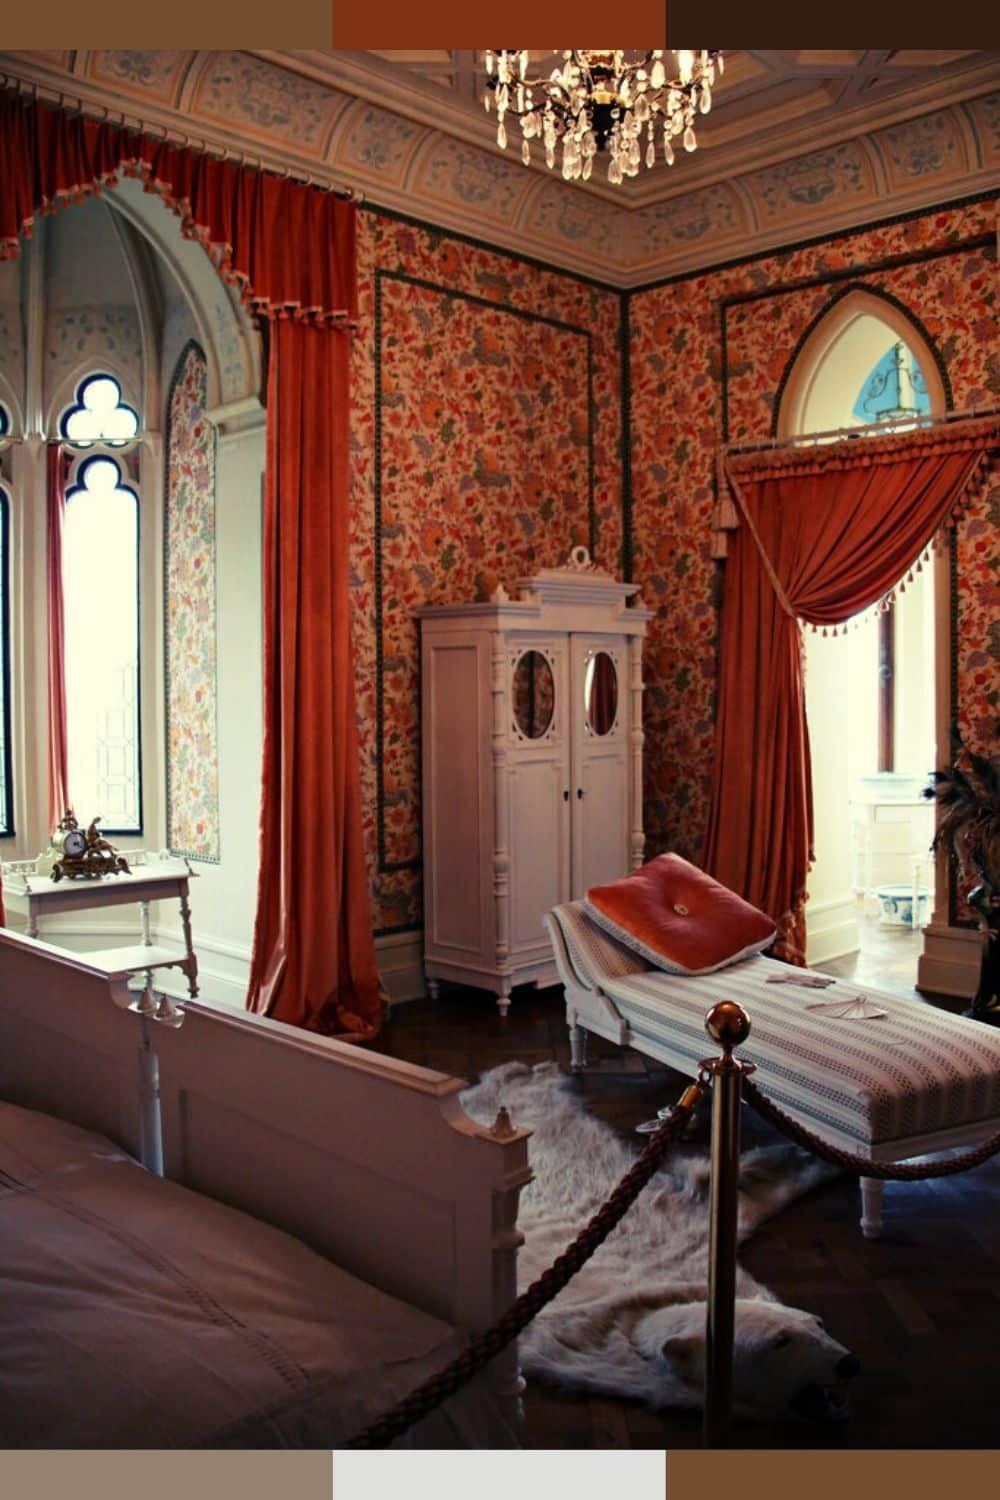 luxury master bedroom furniture